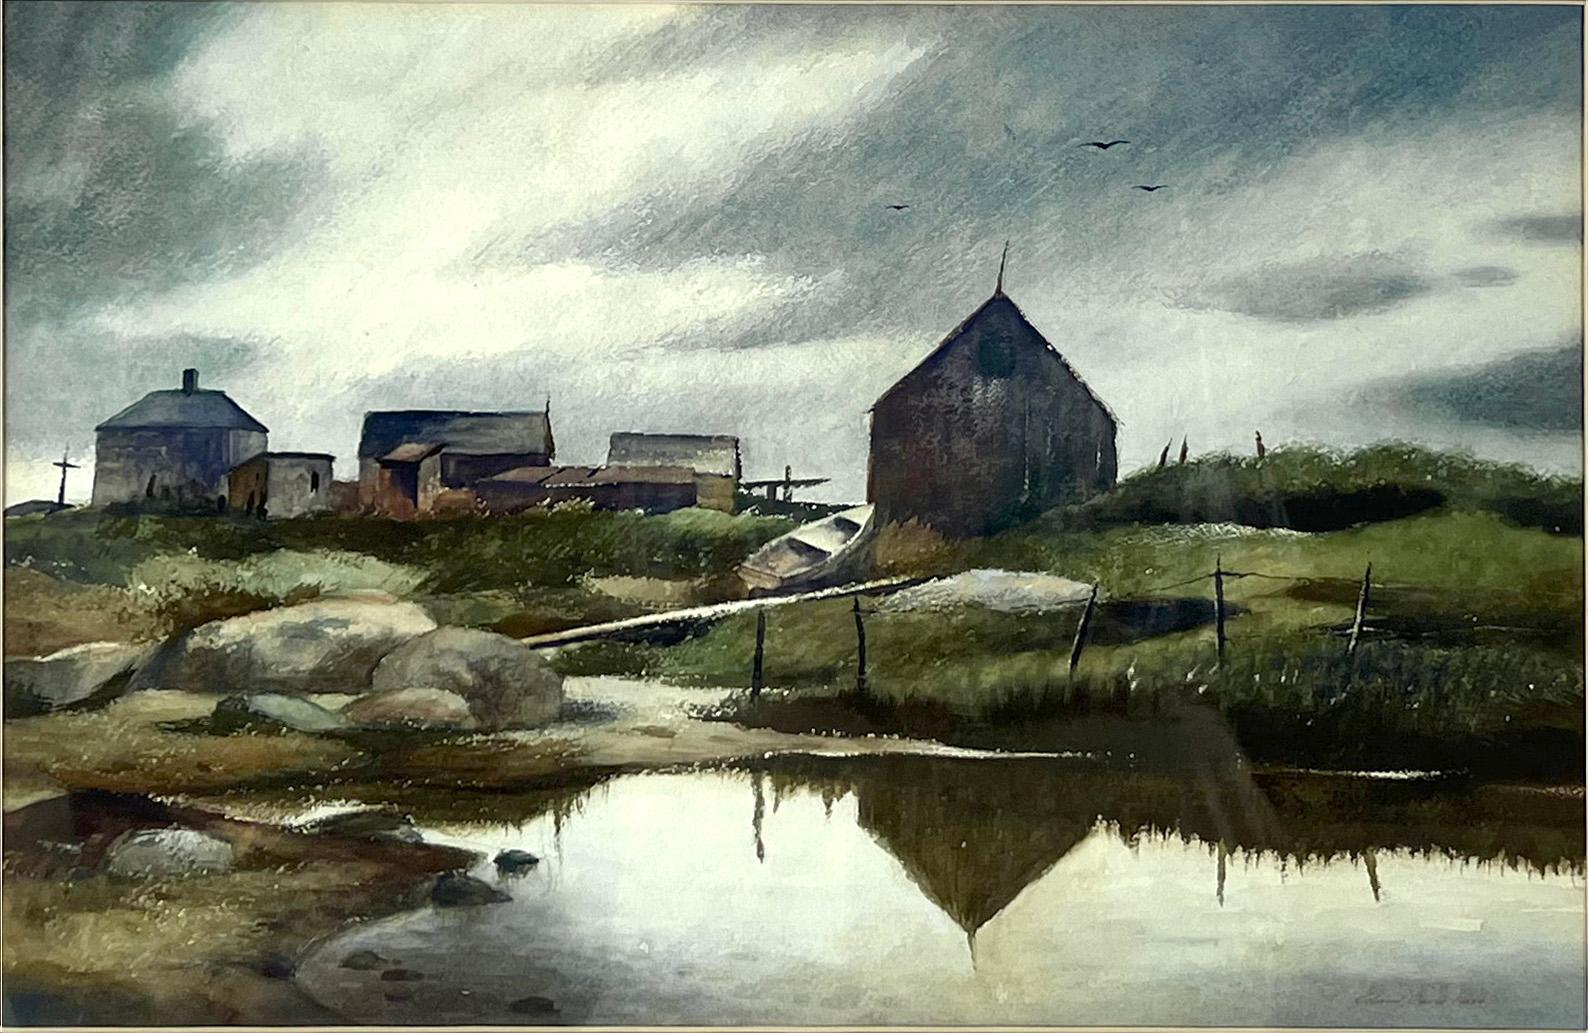 Village de pêcheurs - Massachusetts Aquarelle sur papier - Painting de Richard Clark Hare